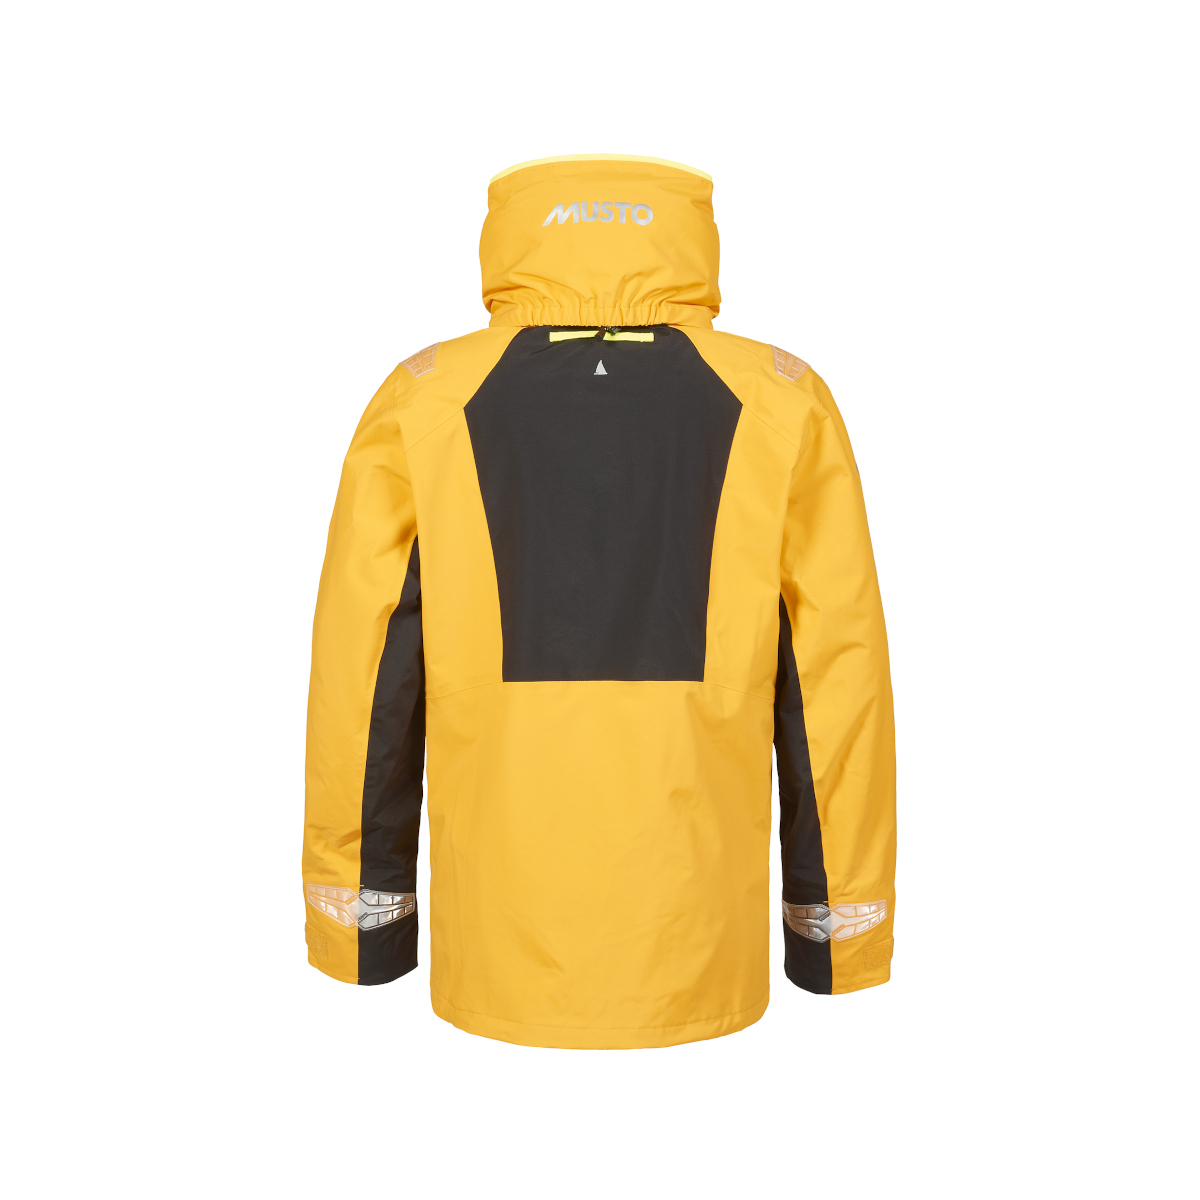 Musto BR2 veste de voile Offshore 2.0 homme jaune, taille XL